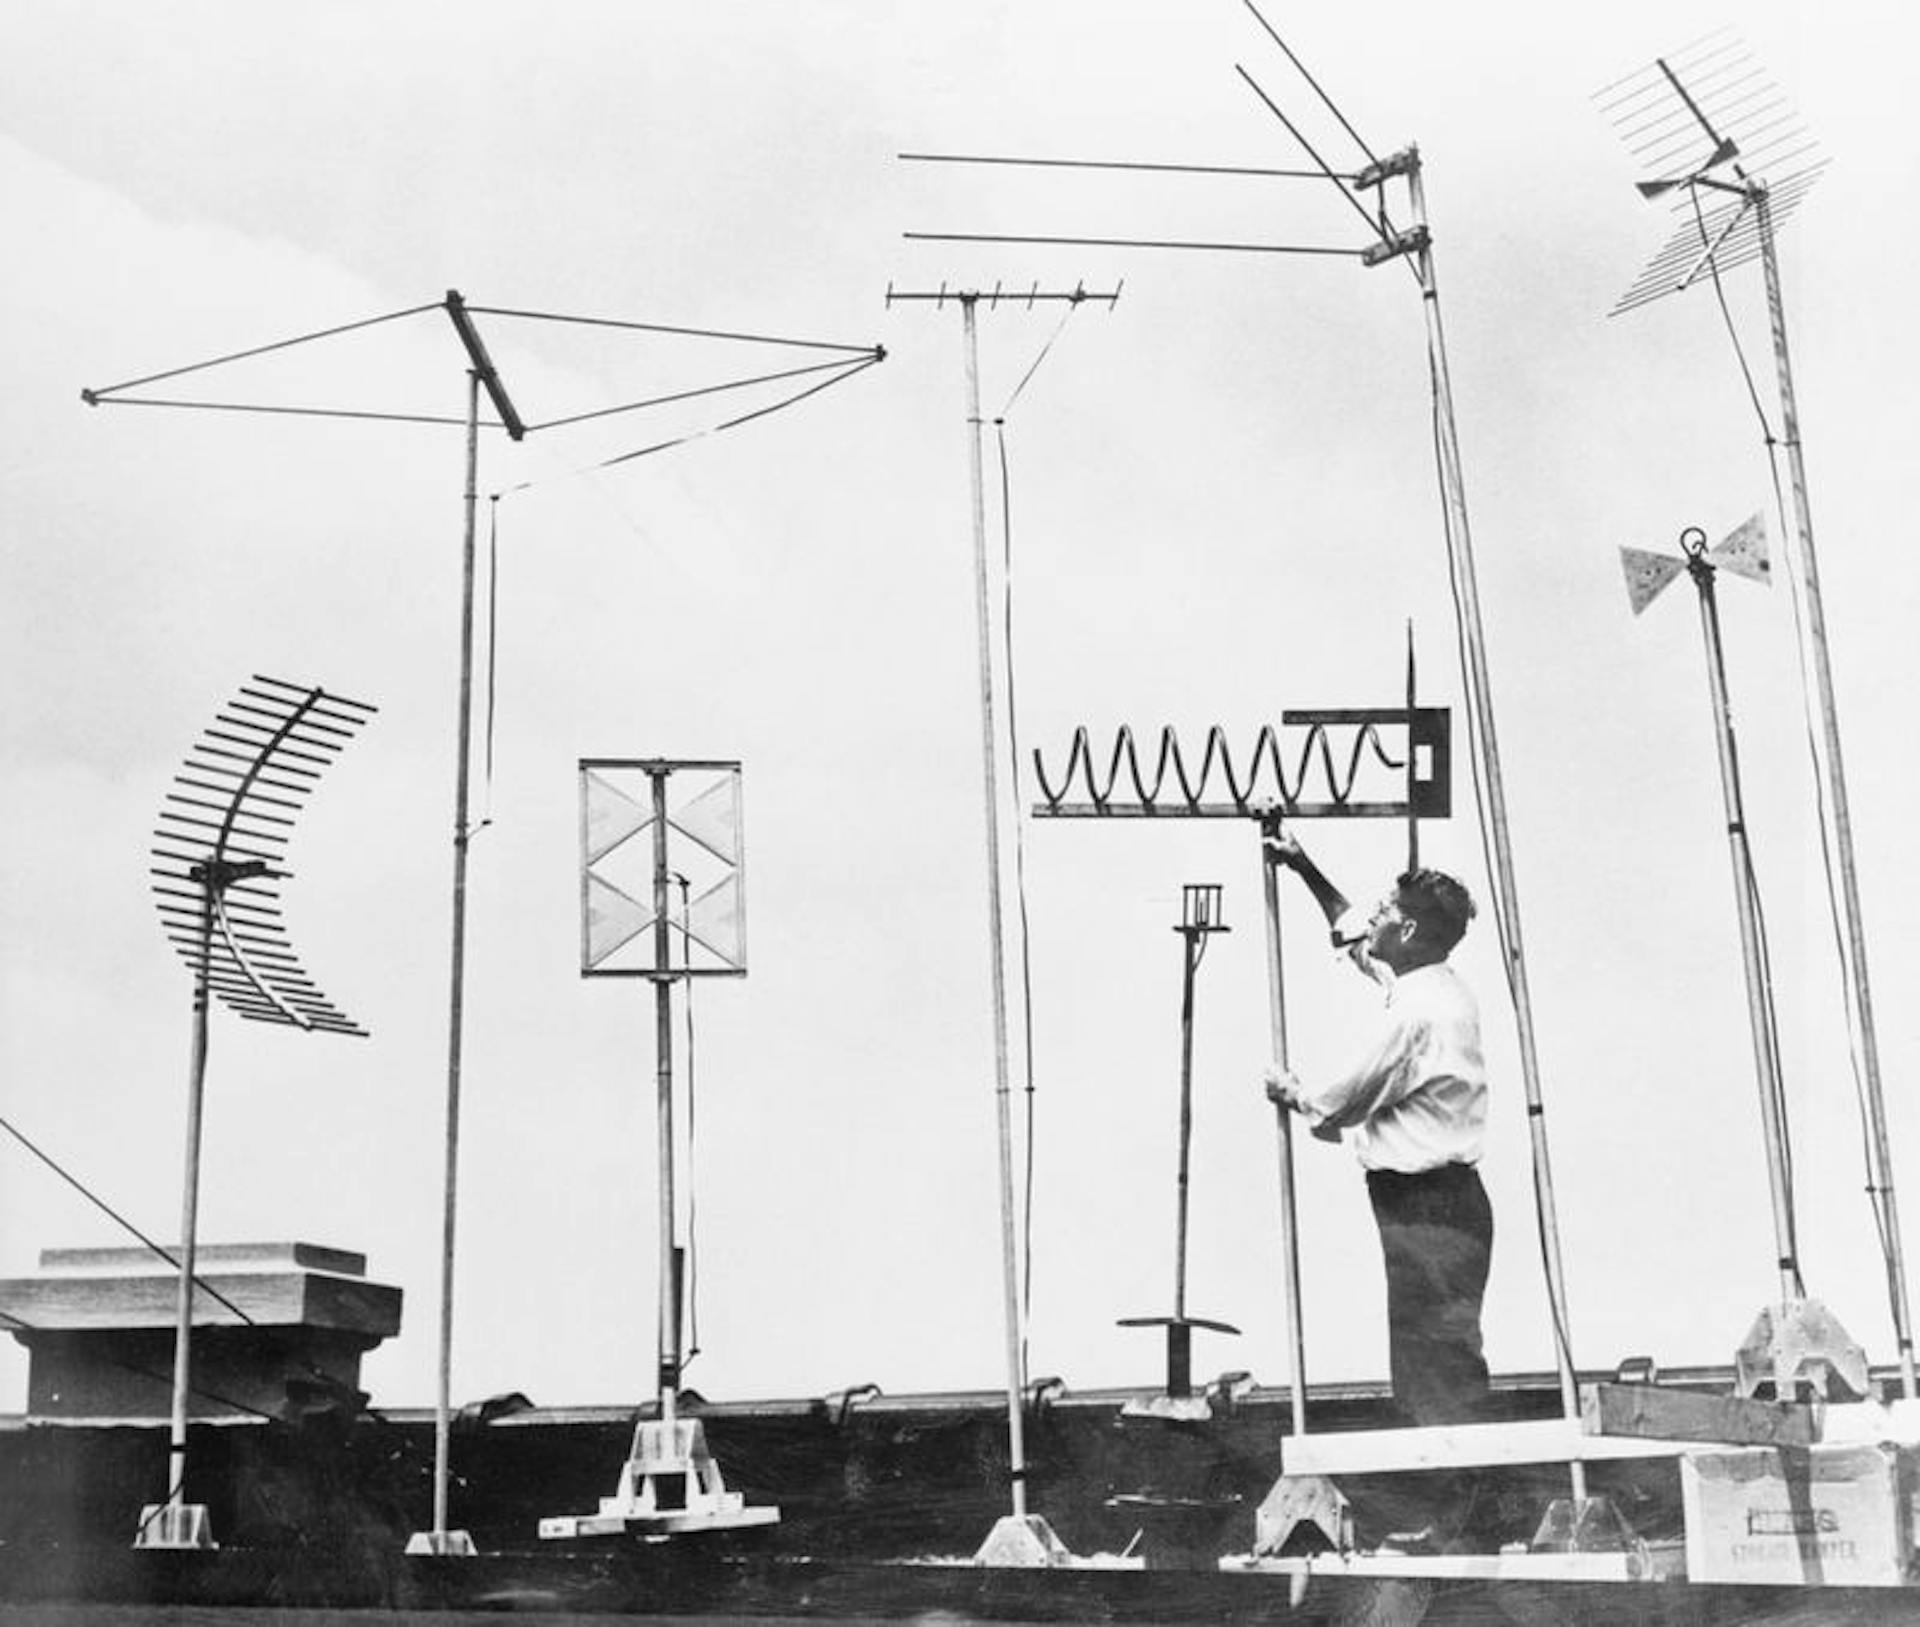 Kể từ khi thành lập vào năm 1934, Ủy ban Truyền thông Liên bang đã quyết định công ty nào sẽ có quyền đối với phần nào của sóng phát sóng - đối với truyền hình và vô số công nghệ khác. Tại đây, một kỹ sư RCA kiểm tra một loạt ăng-ten TV tần số siêu cao vào năm 1952. Nguồn: Bettmann Archive / Getty Images